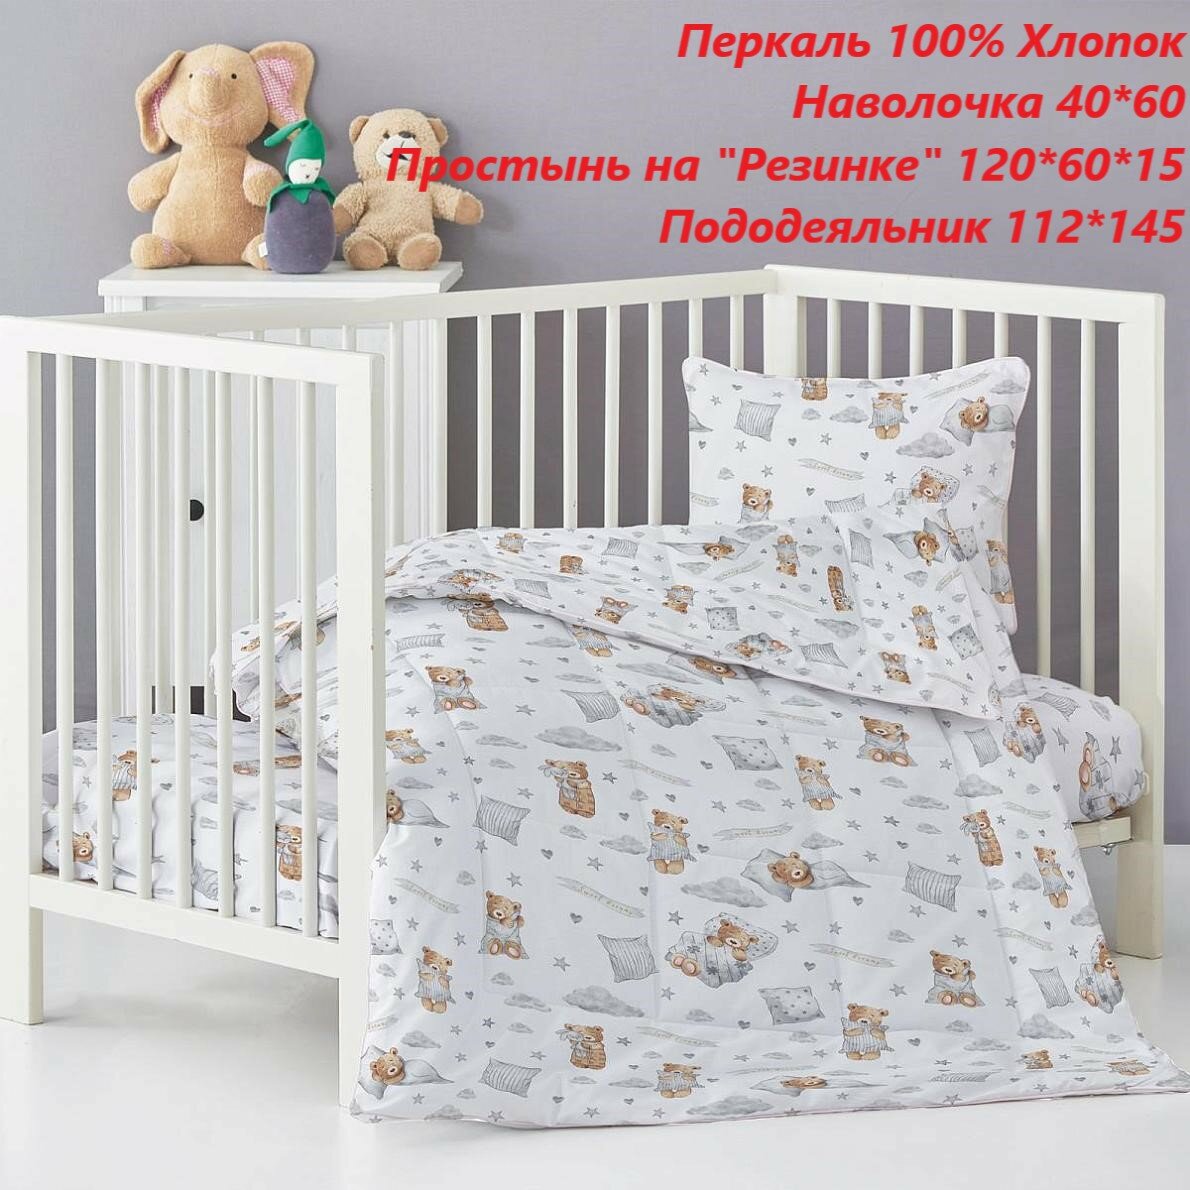 Детское постельное белье на резинке 120 х 60